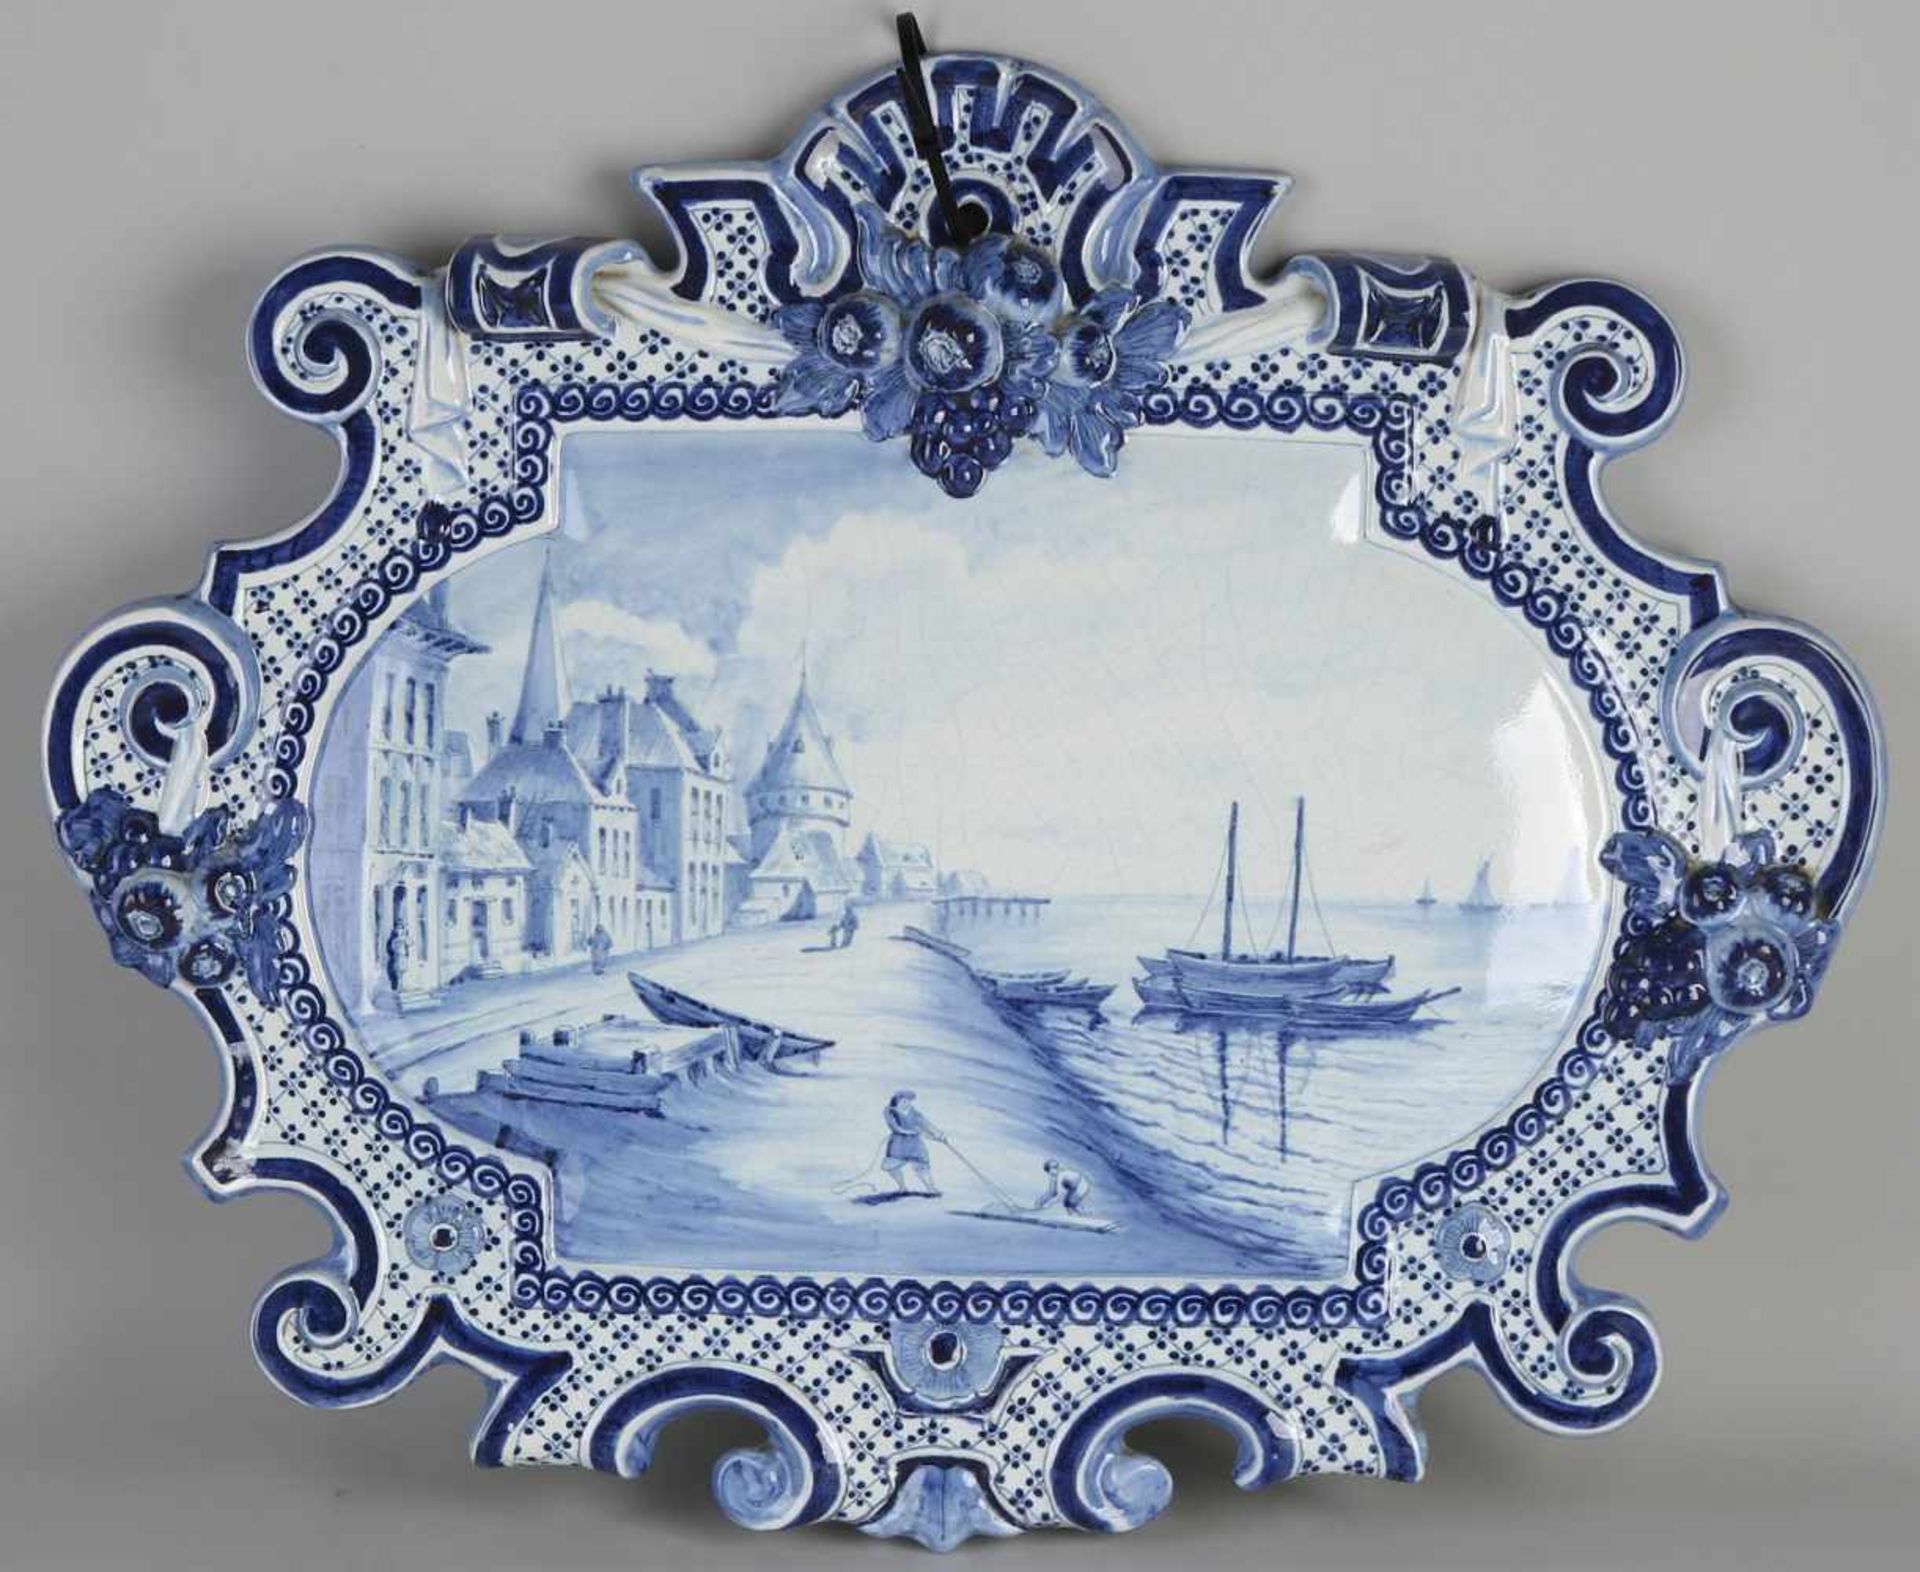 Seltene Delfter Fayence-Plakette aus dem 19. Jahrhundert mit niederländischem Hafenblick und